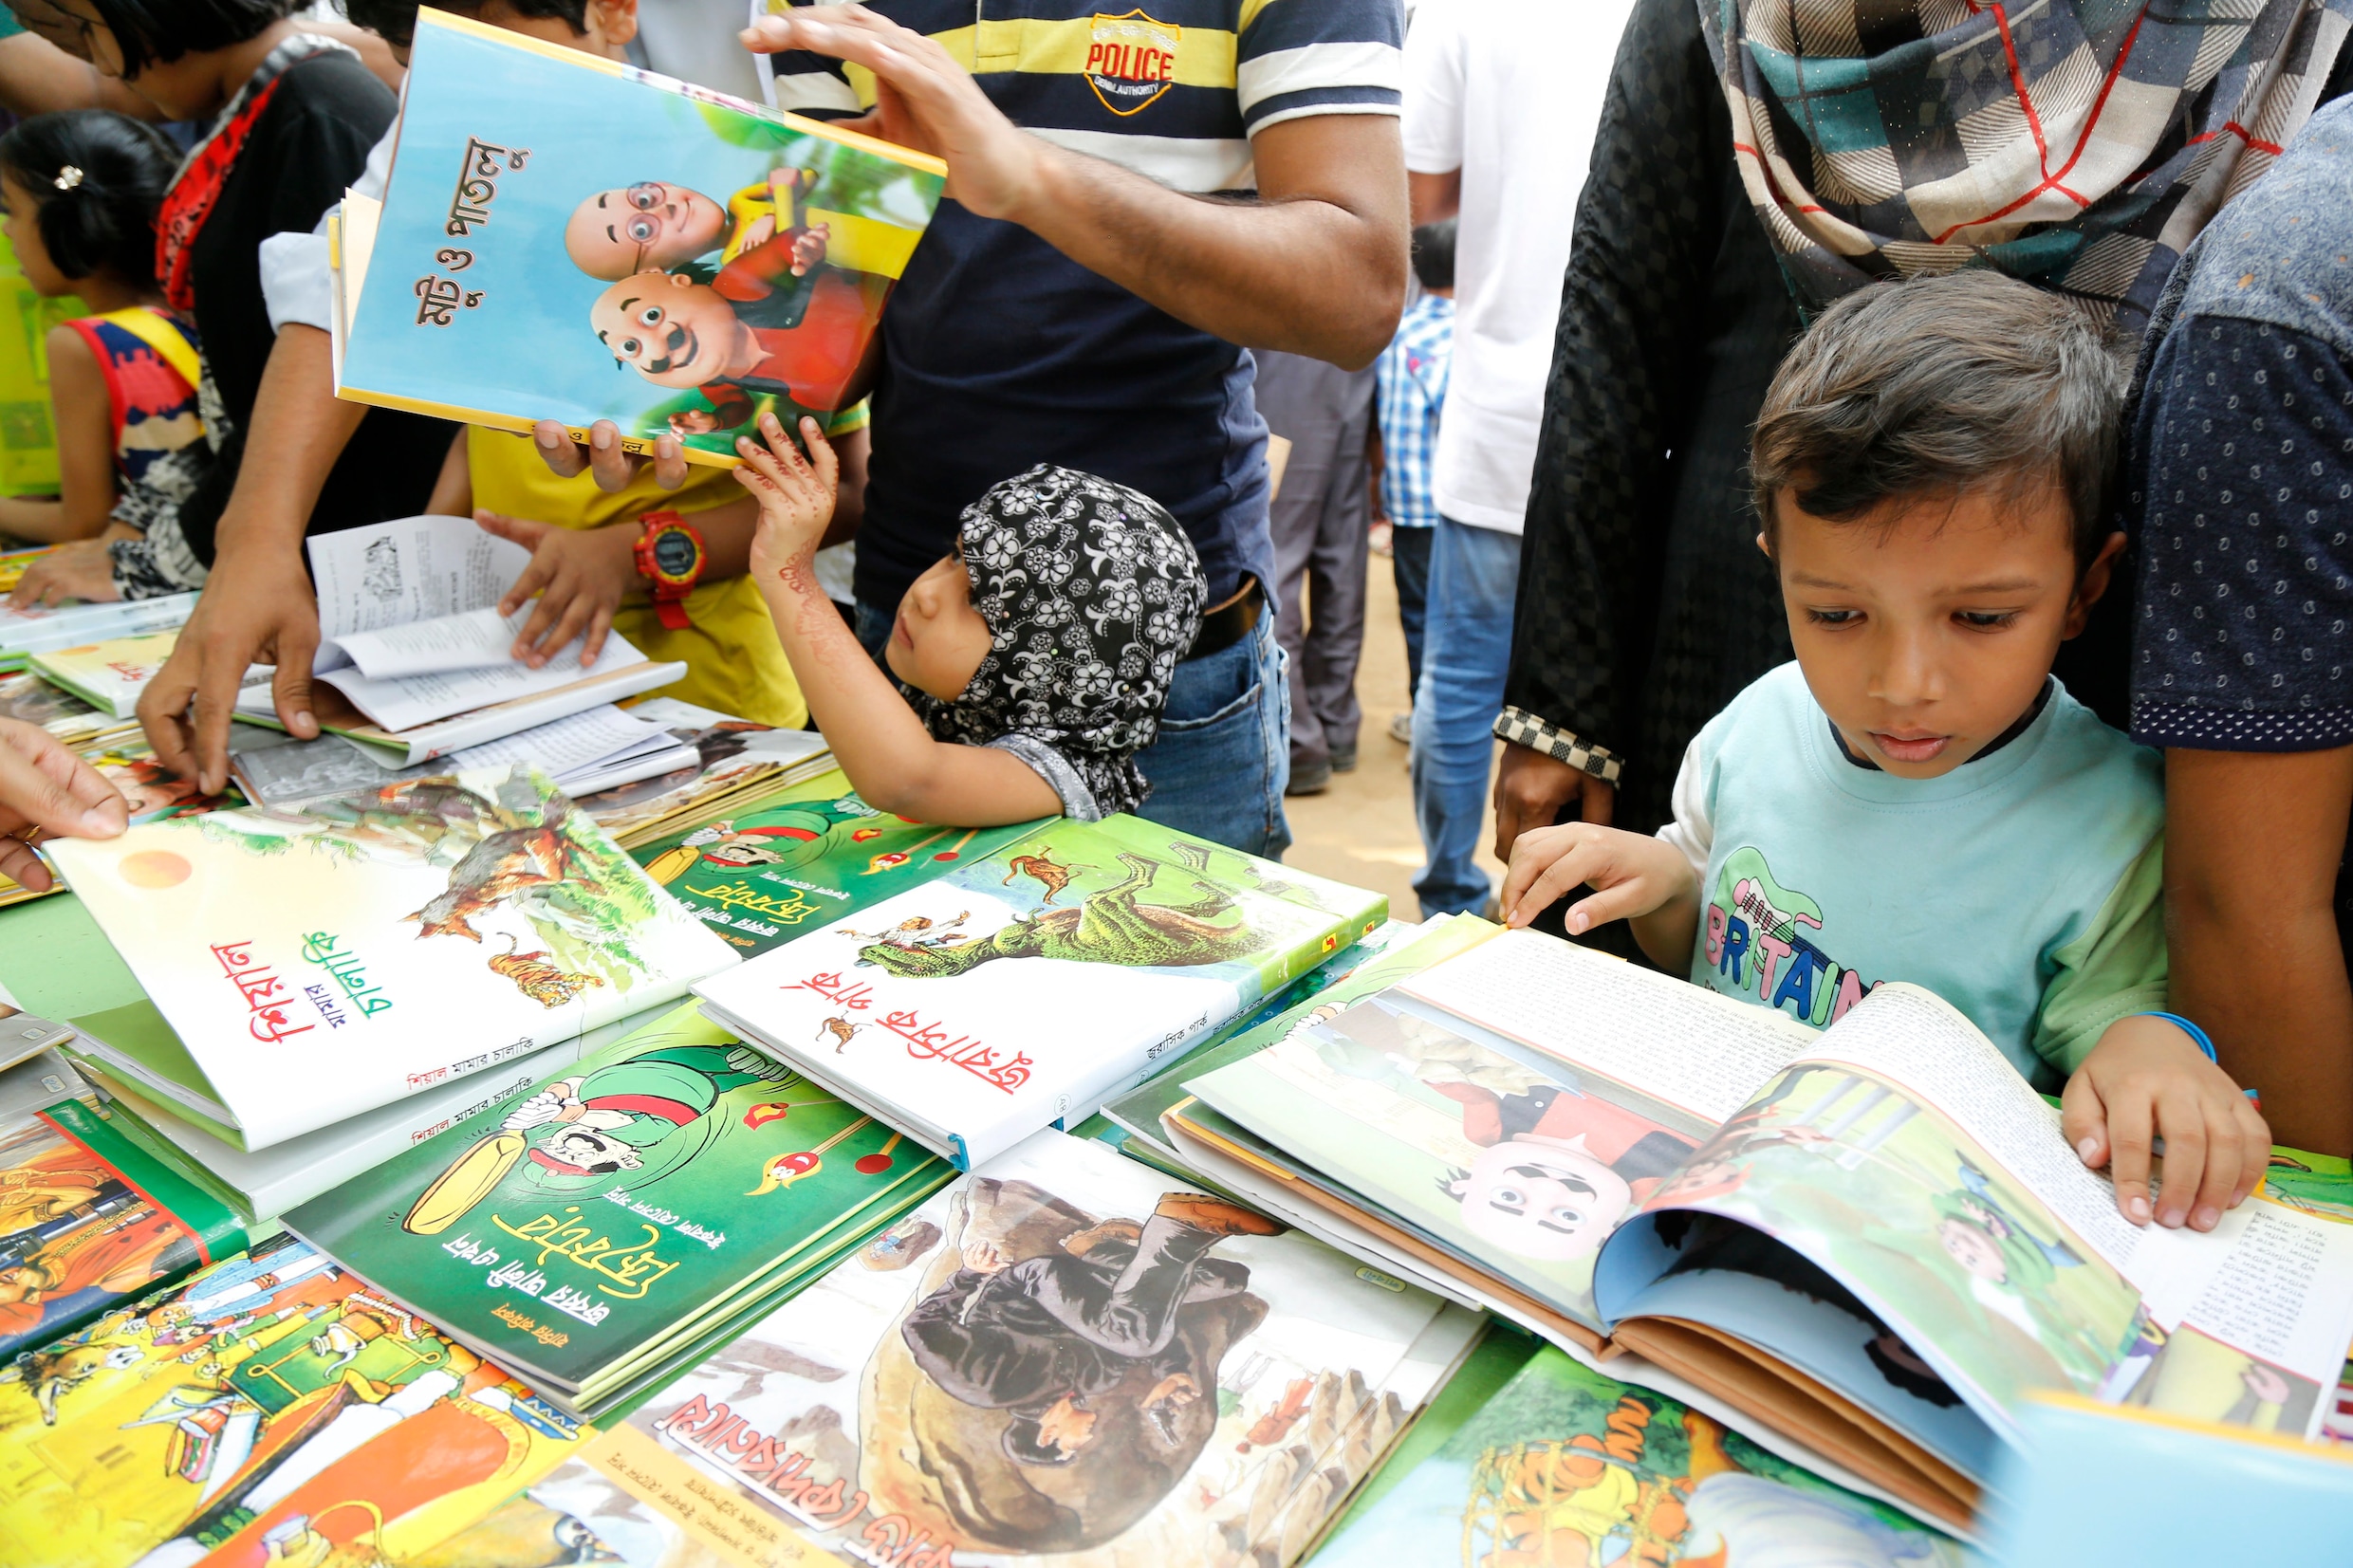 Kinderboeken met mensen in hoofdrol hebben grotere impact op gedrag